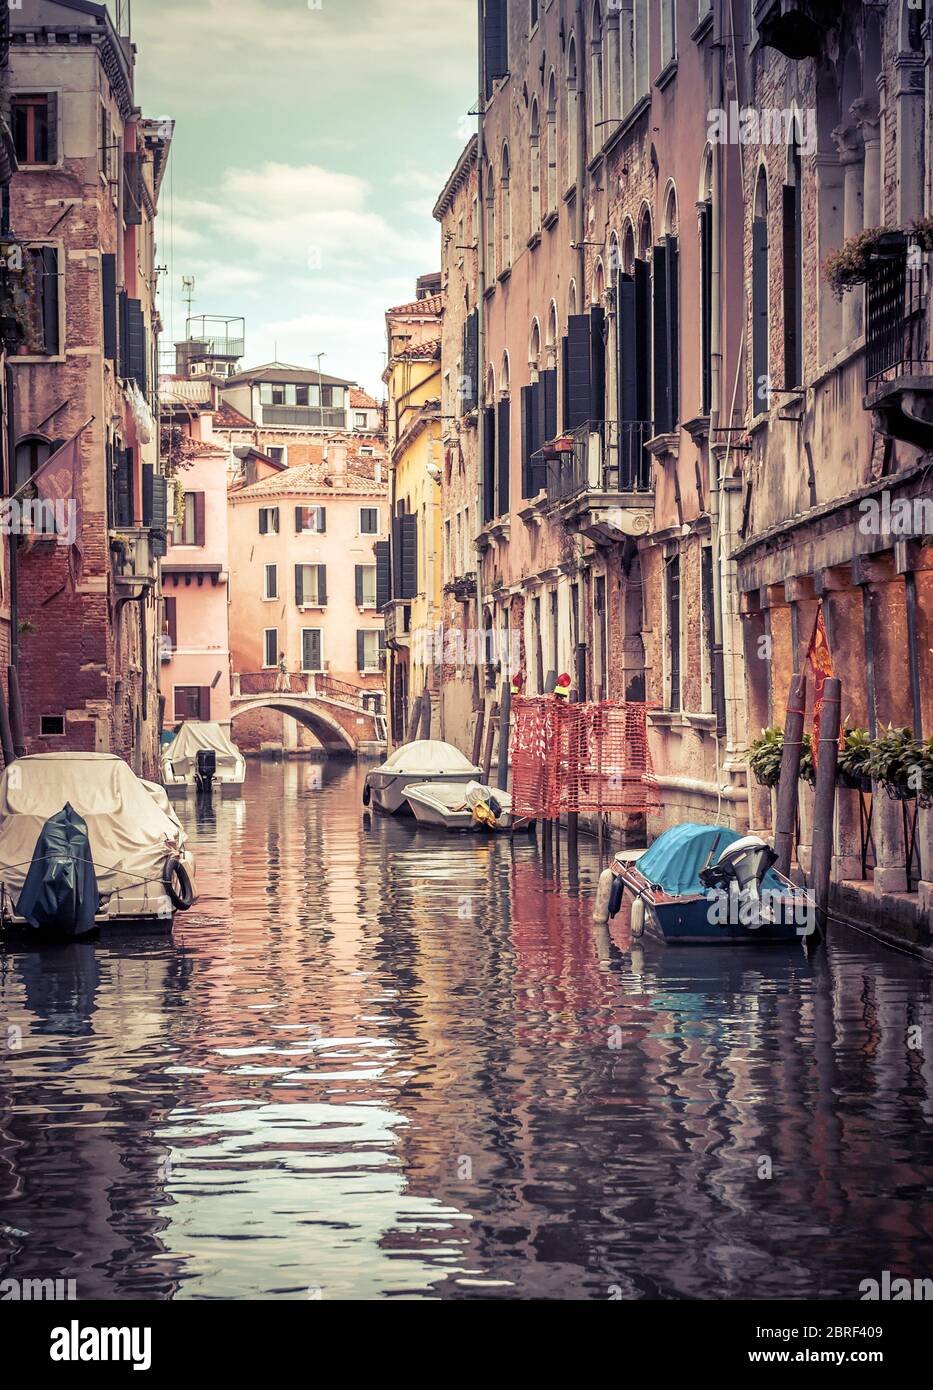 Alte Straße mit geparkten Booten, Venedig, Italien. Schöne vertikale Ansicht des Kanals von Venedig mit Reflexionen im Wasser. Historische Gebäude und Stadtbild des Ehrw Stockfoto